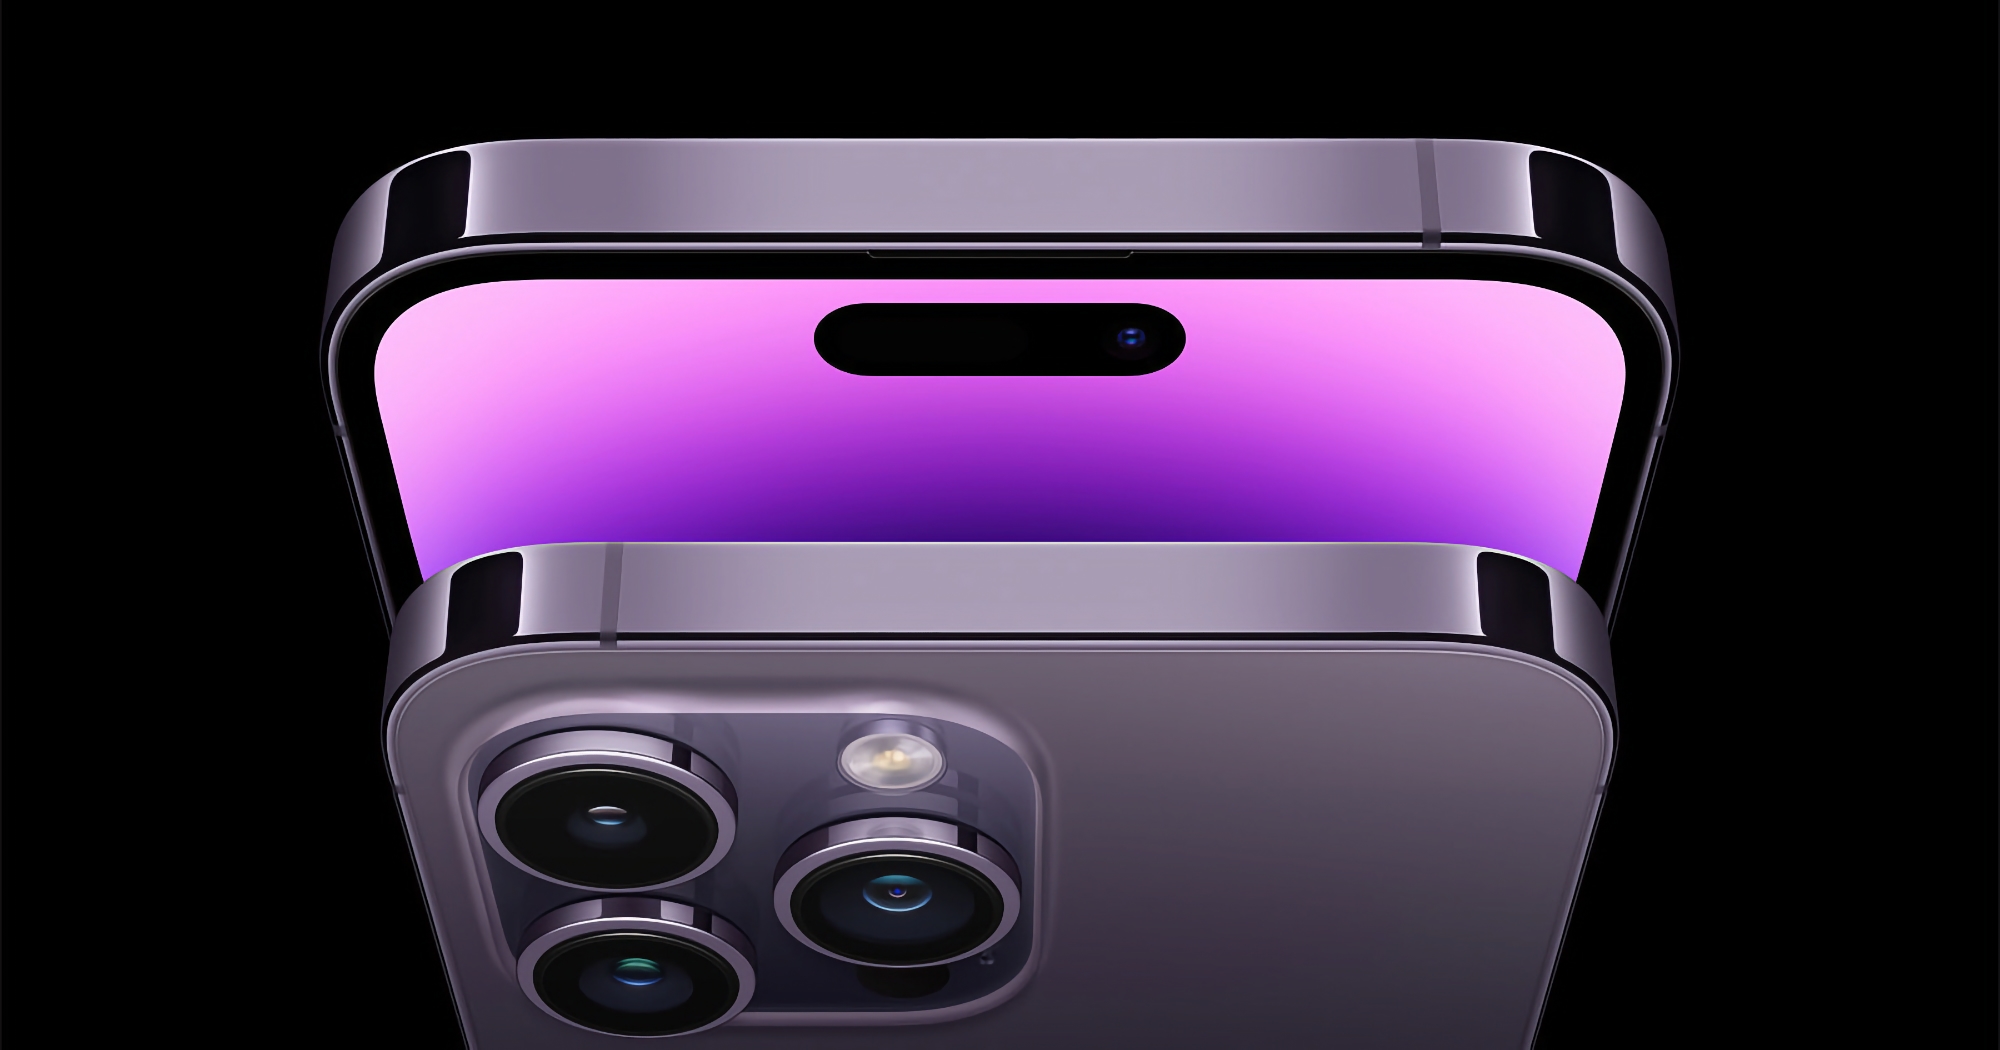 Insider : Les modèles de base de l'iPhone seront équipés d'écrans ProMotion à 120 Hz en 2025